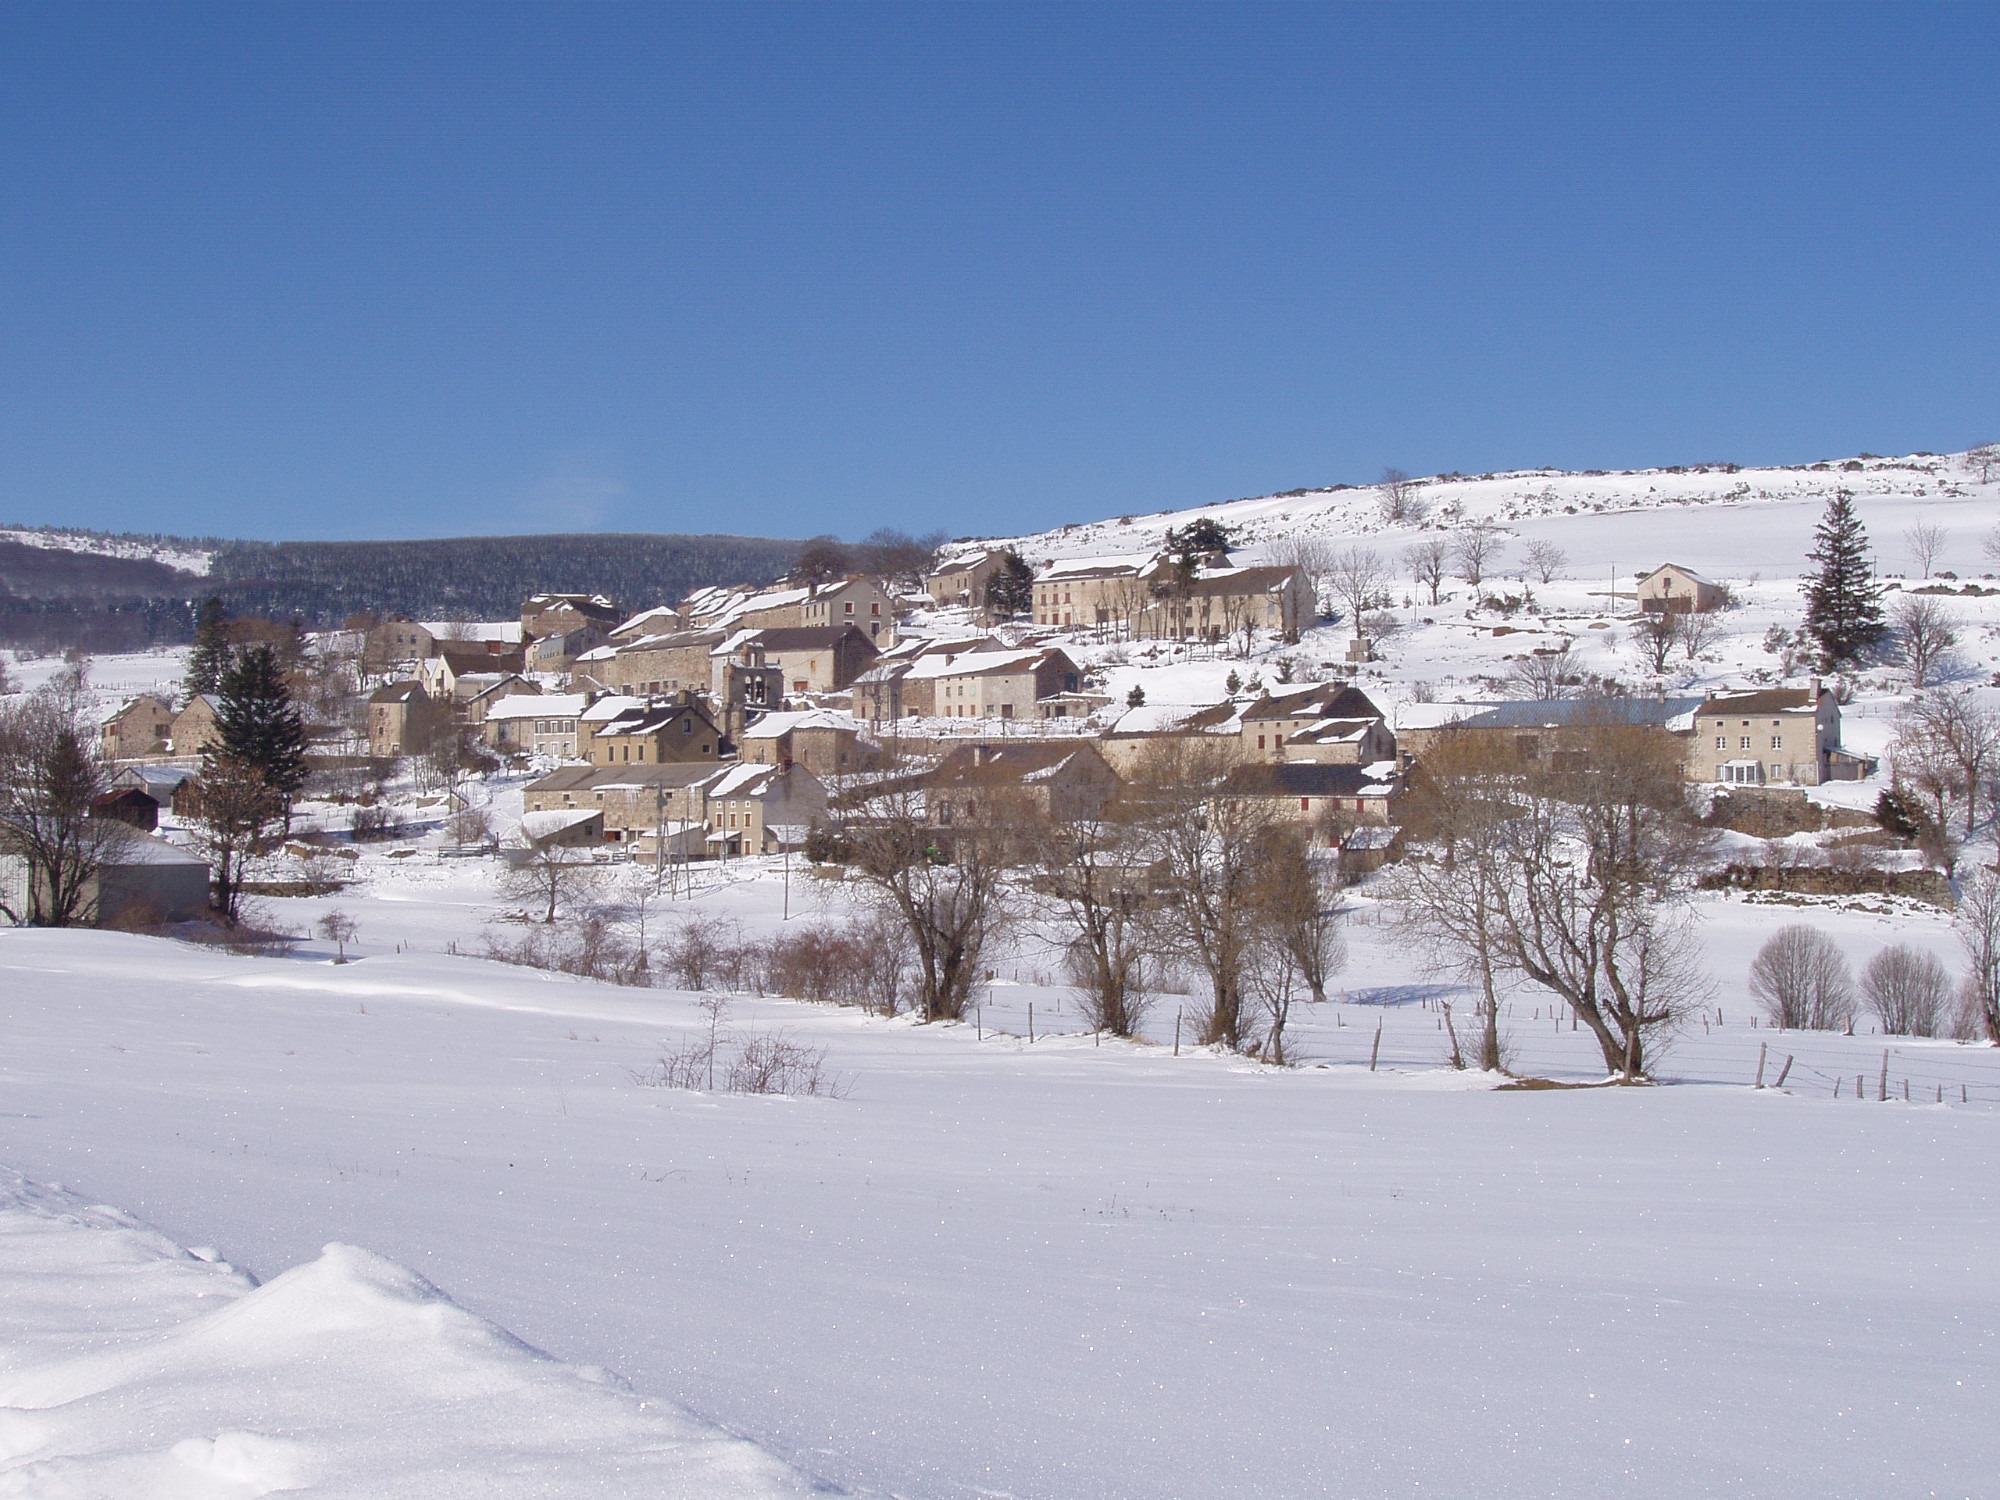 Gites La Panouse Village Vue hivernale Ciel bleu